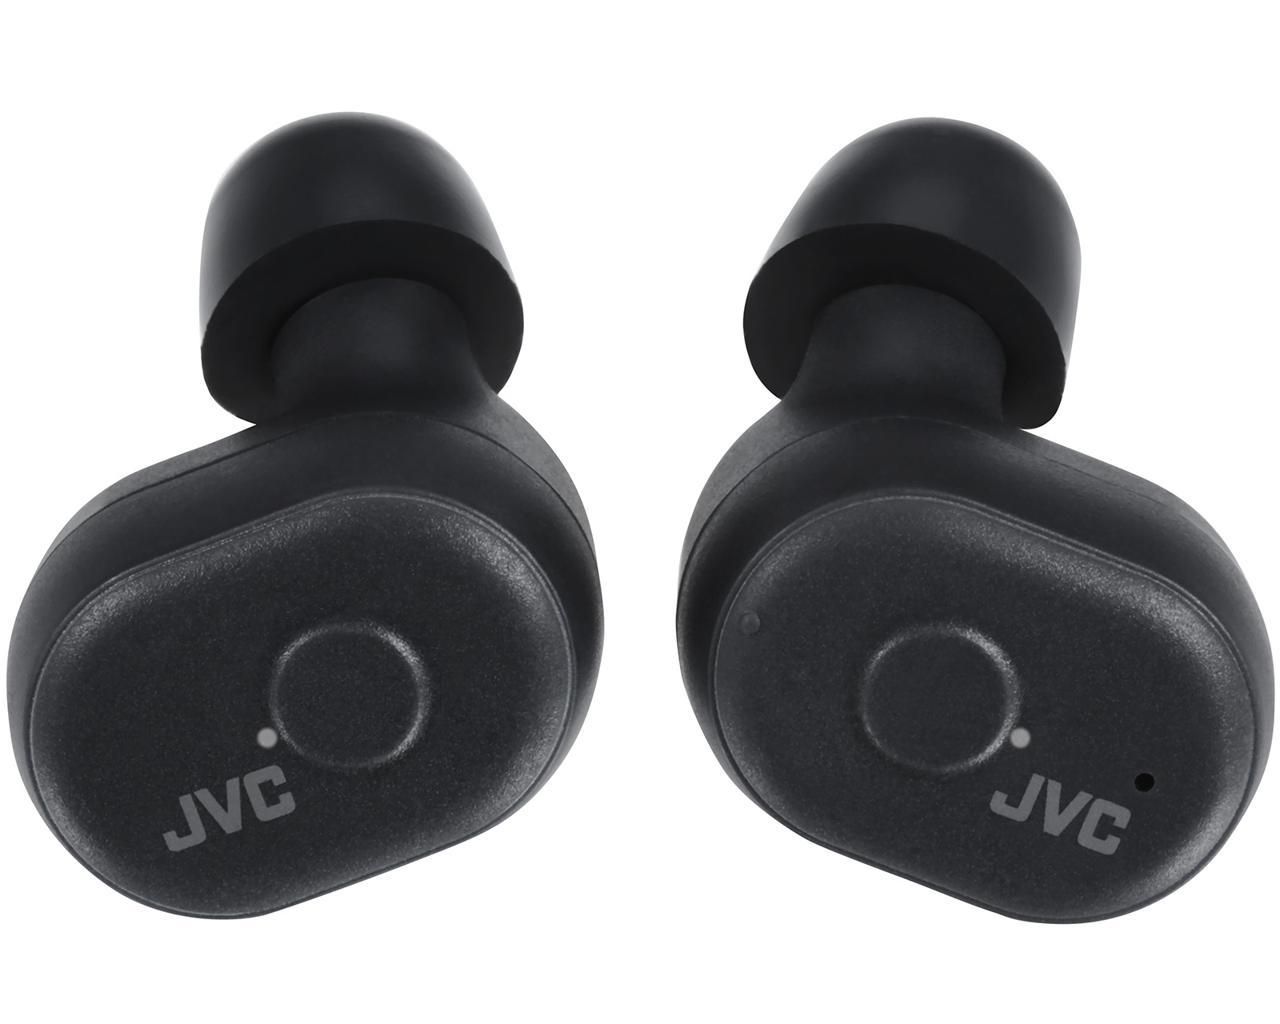 JVC HA-A10T True Wireless IE Headphones charcoal black (HA-A10T-B-U)